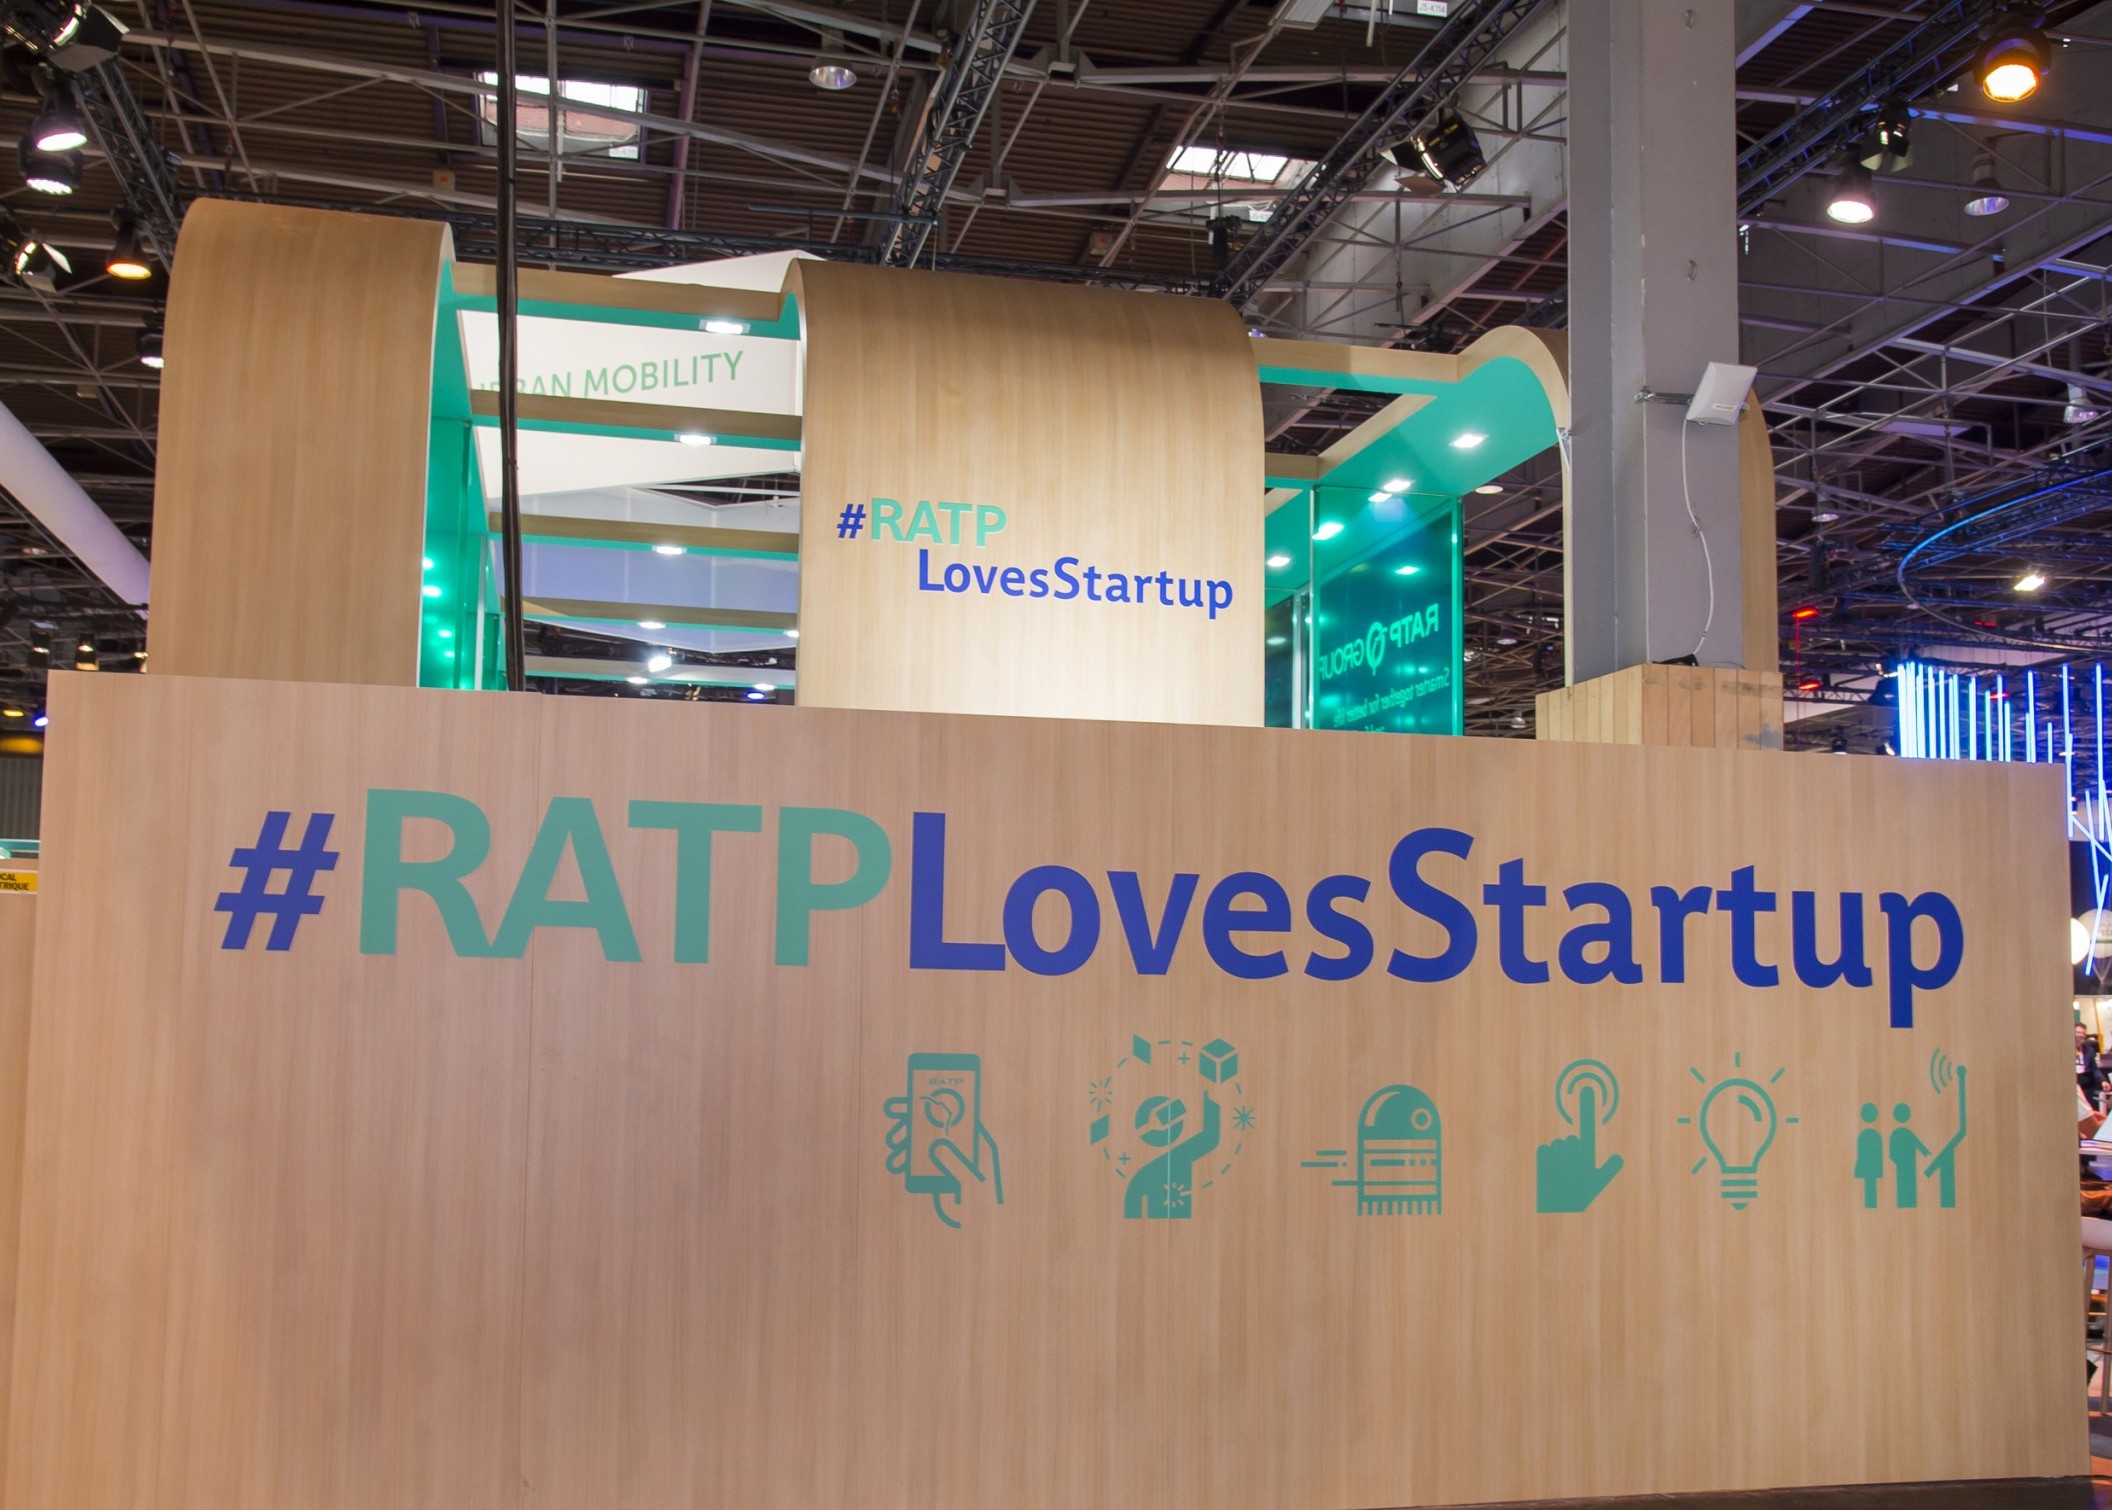 Visuel Pourquoi le groupe RATP sélectionne des startups et leur propose de les aider ?